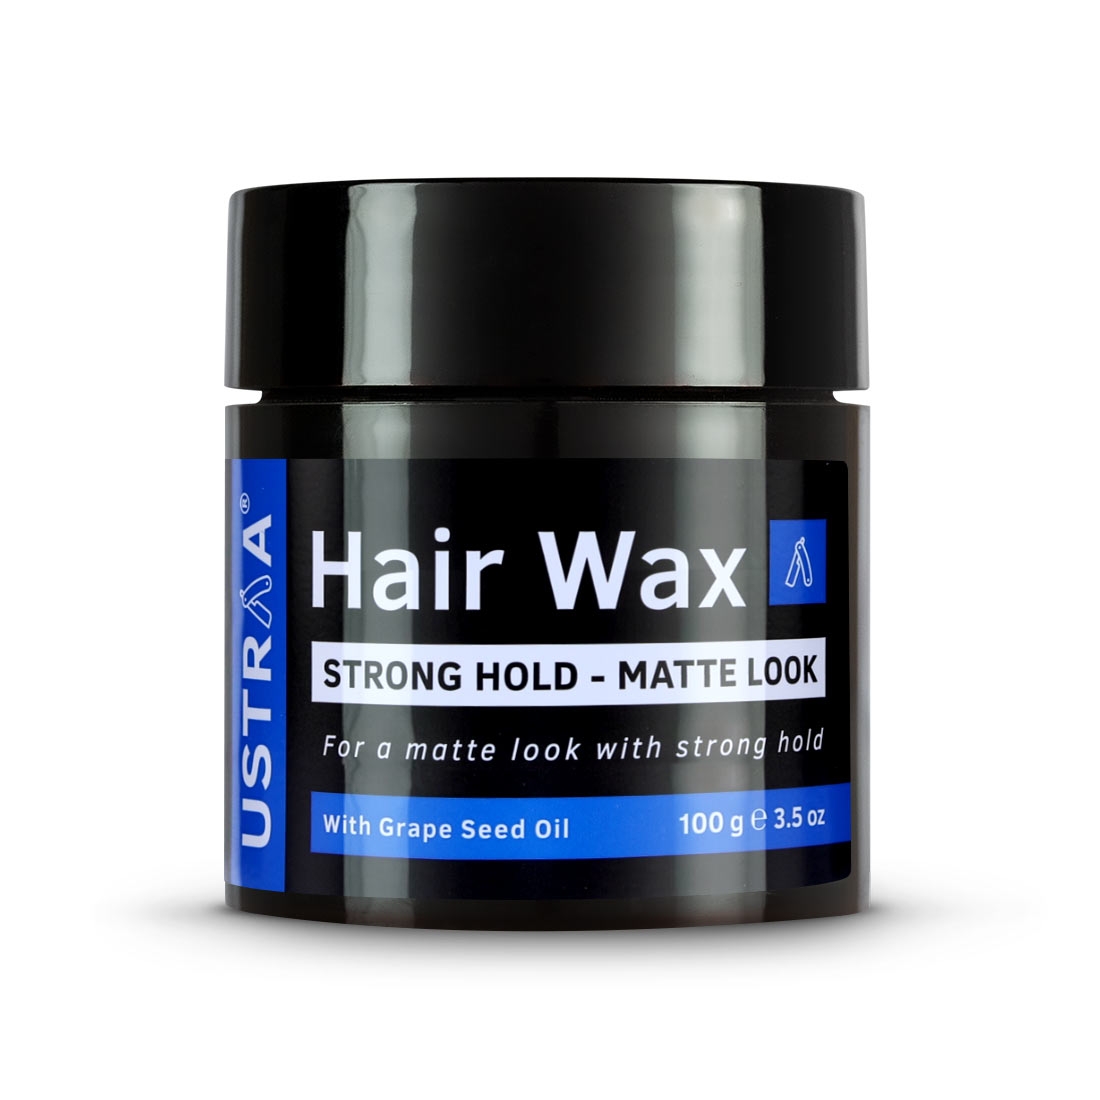 Ustraa | Ustraa Ayurvedic Beard Growth Oil -100ml & Hair Wax Matte - 100g 4